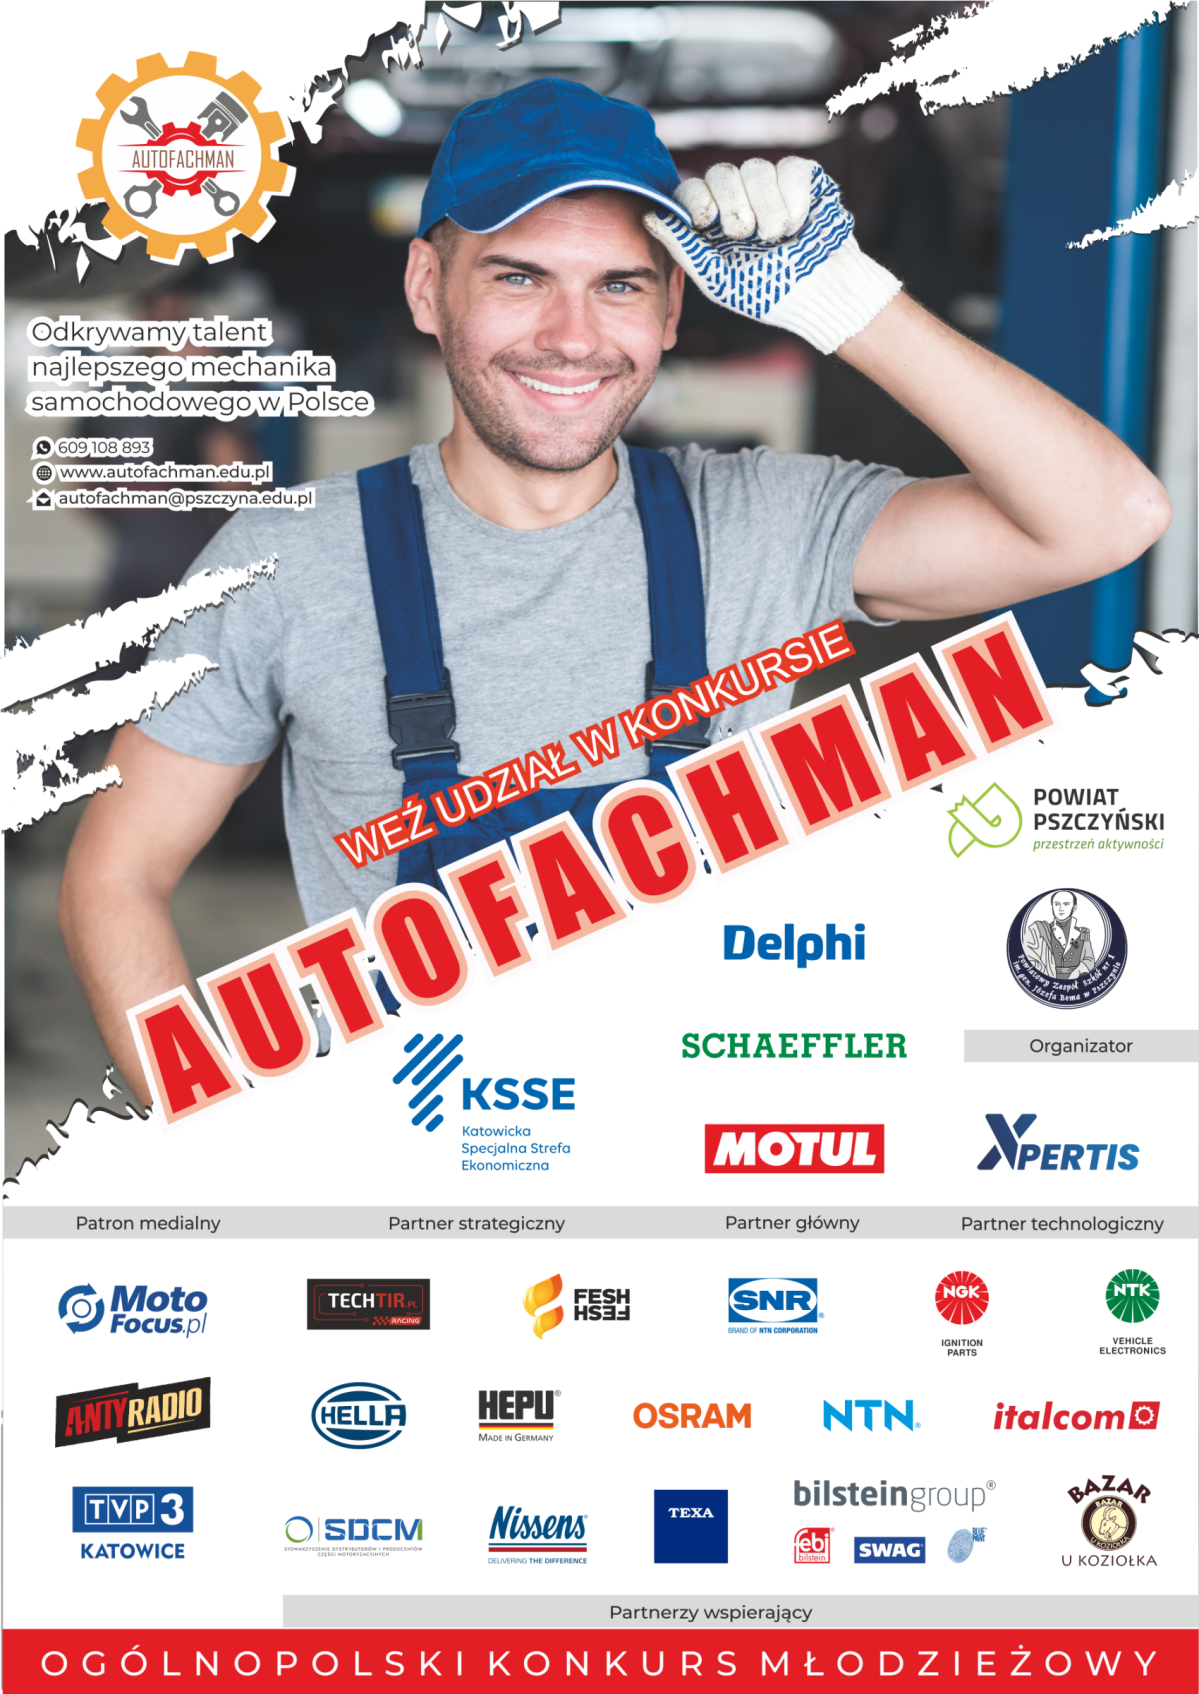 Plakat konkursu Autofachman, z logami partnerów wypisanymi w tekście.